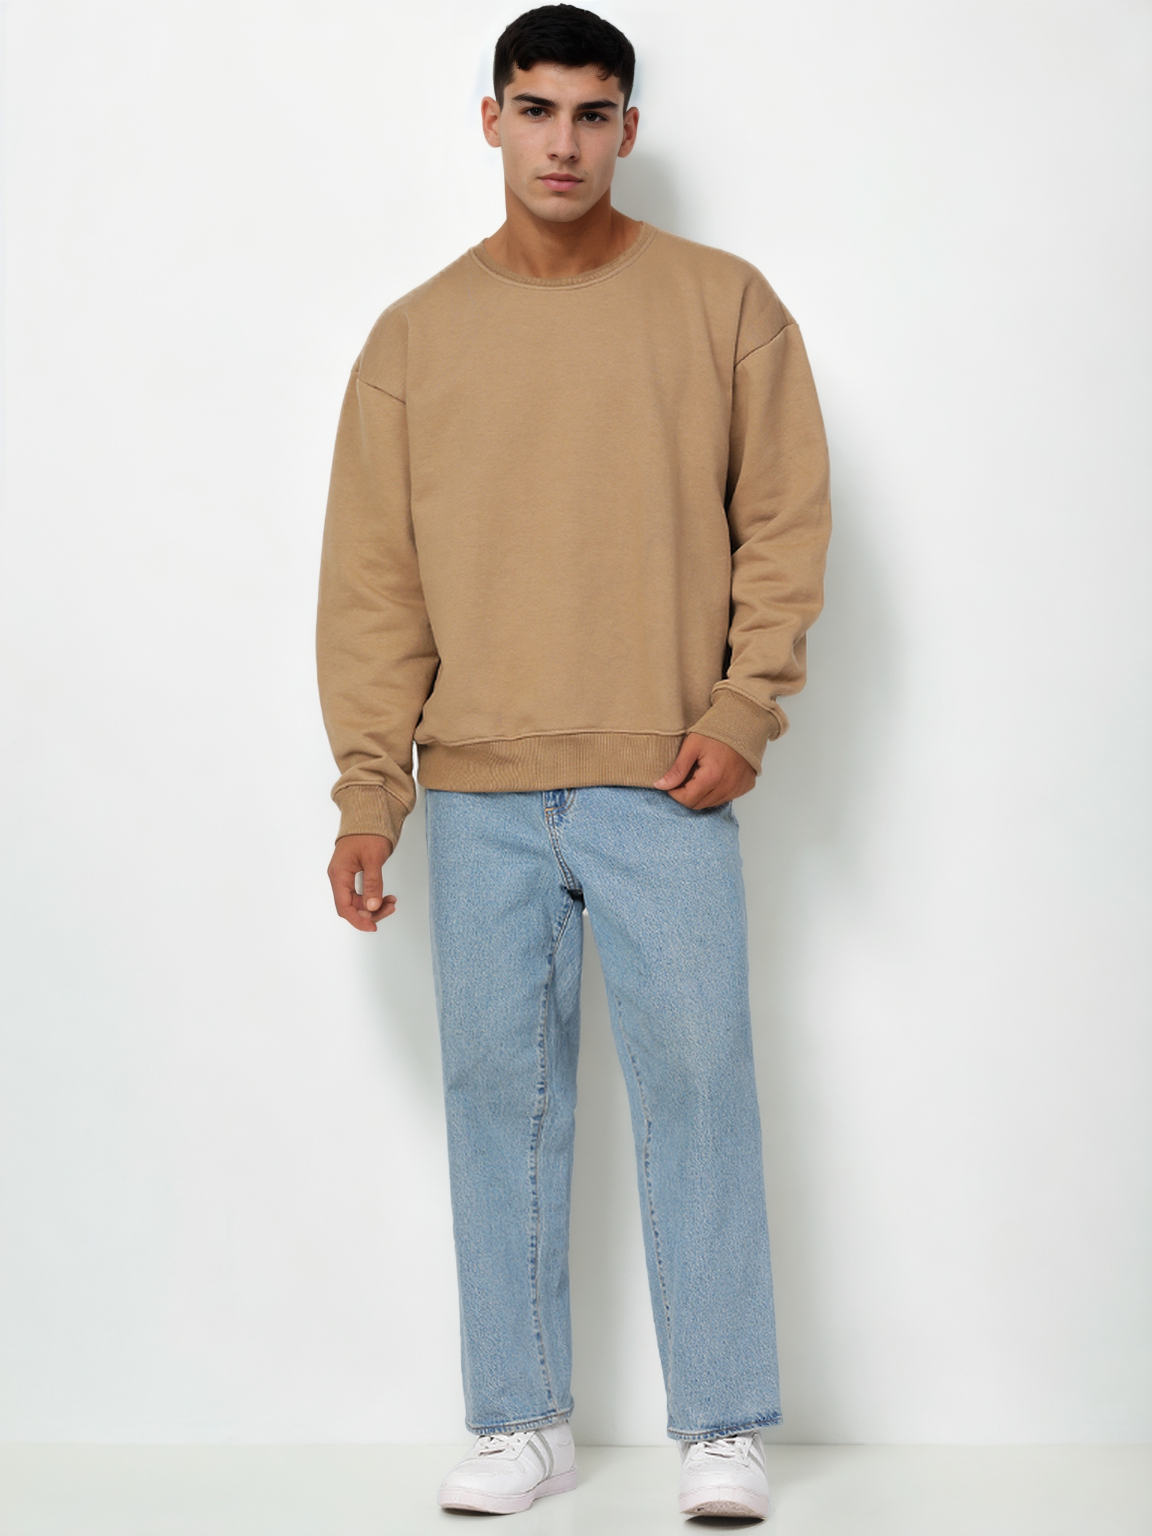 Hemsters Brown Knitted Full Sleevs Sweatshirt For Men